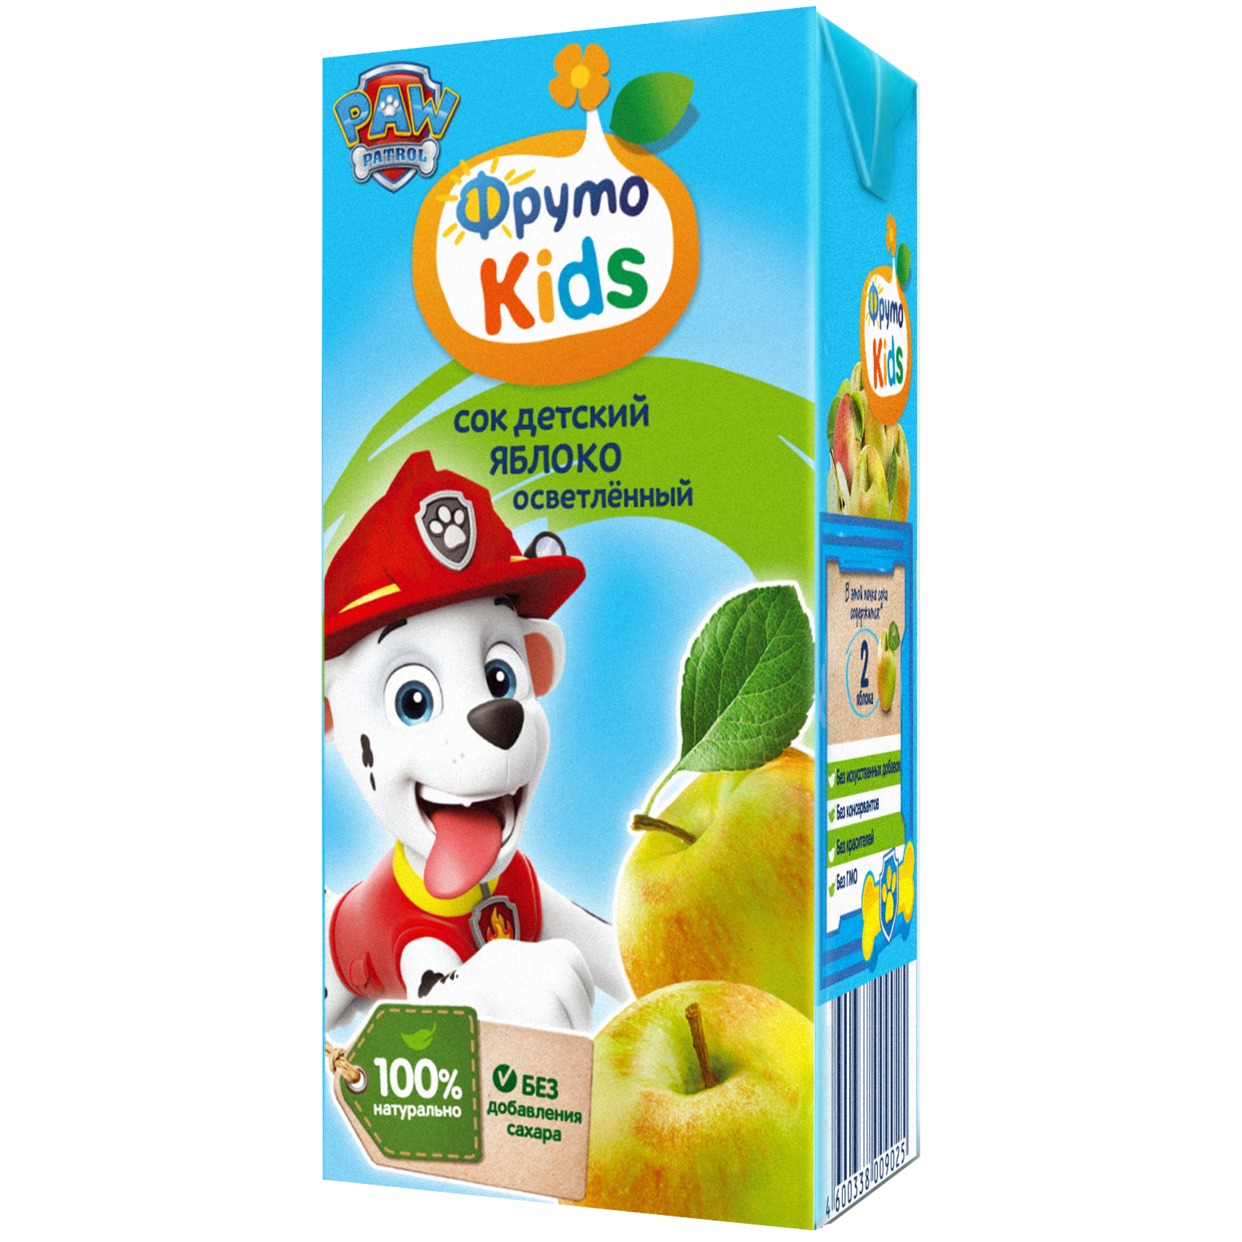 ФрутоKids 0,2л Сок яблочный осветленный для питания детей раннего возраста по акции в Пятерочке